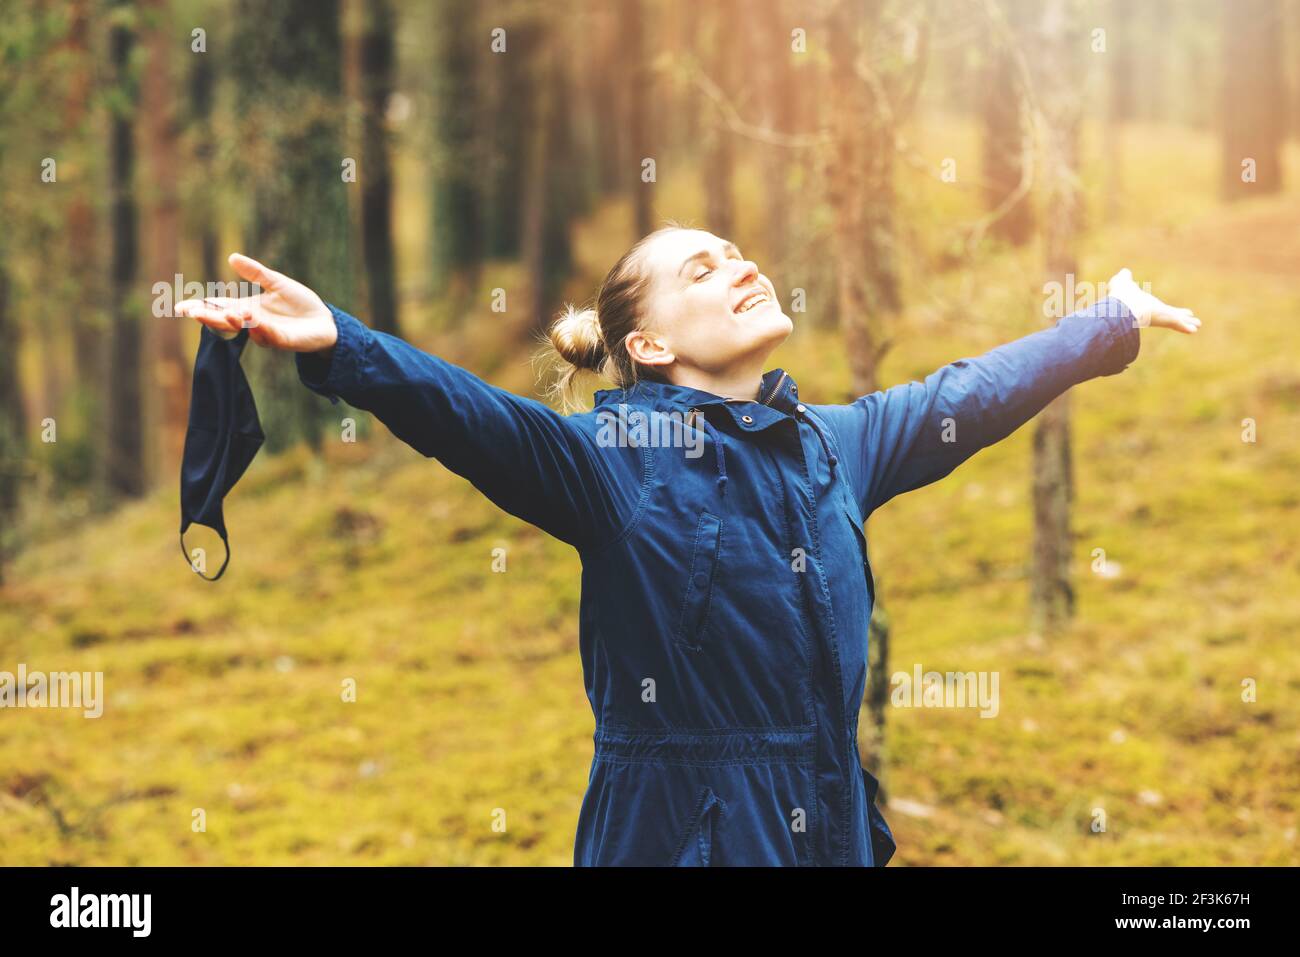 santé mentale et soulagement du stress pendant la pandémie de covid-19. femme jouissant de la nature et de l'air frais avec masque facial enlevé dans la forêt Banque D'Images